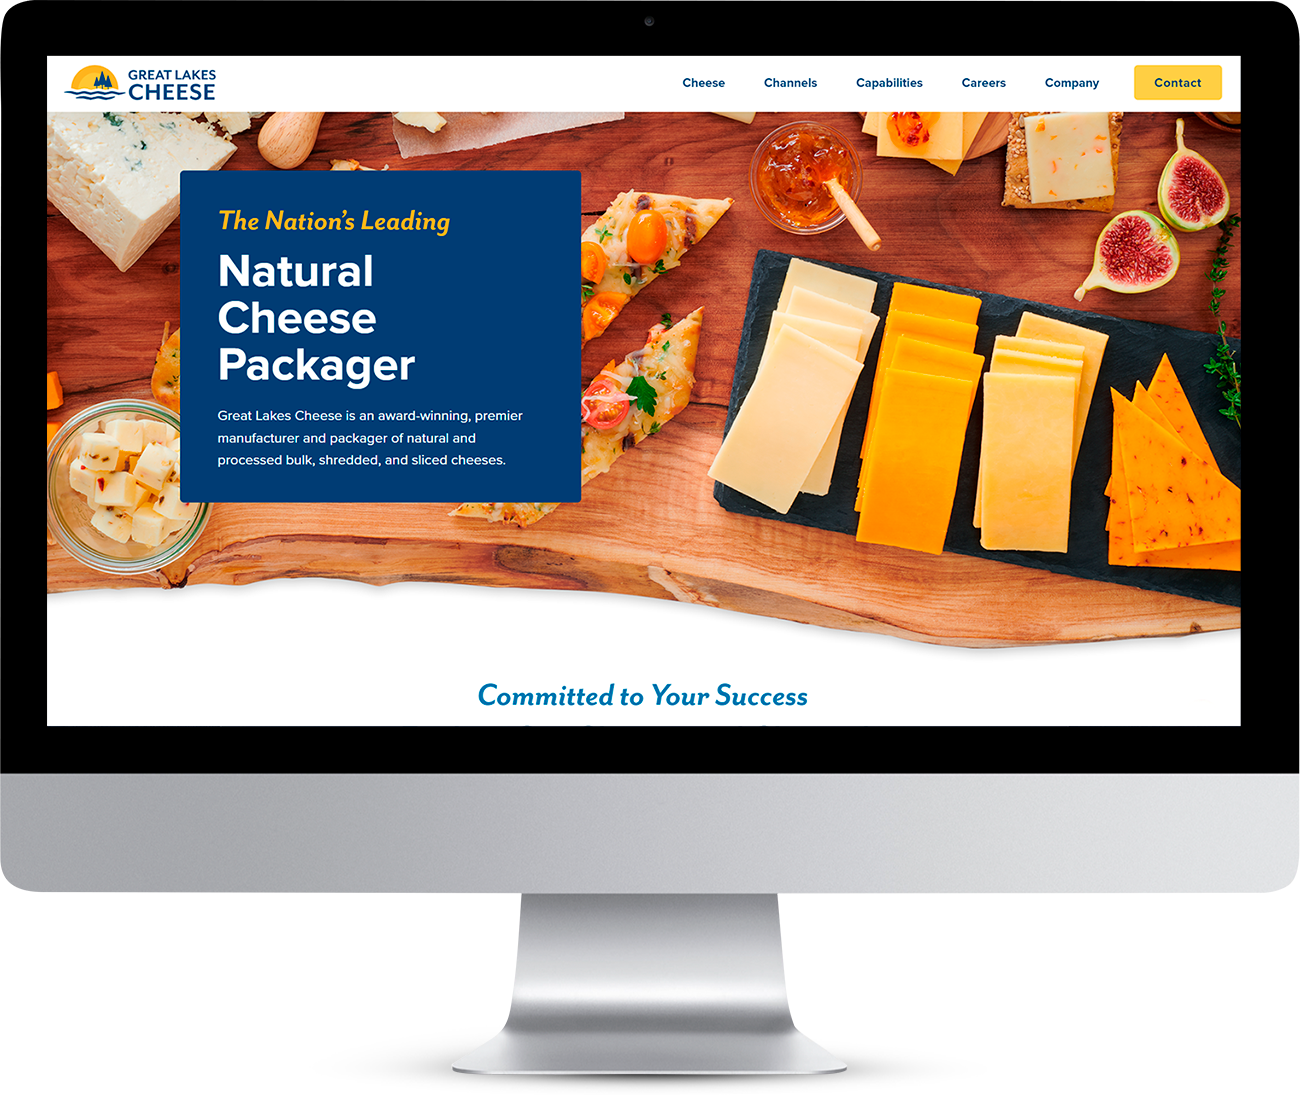 计算机监控显示大湖奶酪网站,展示奶酪片、果果和标题:国家前导自然奶酪打包机